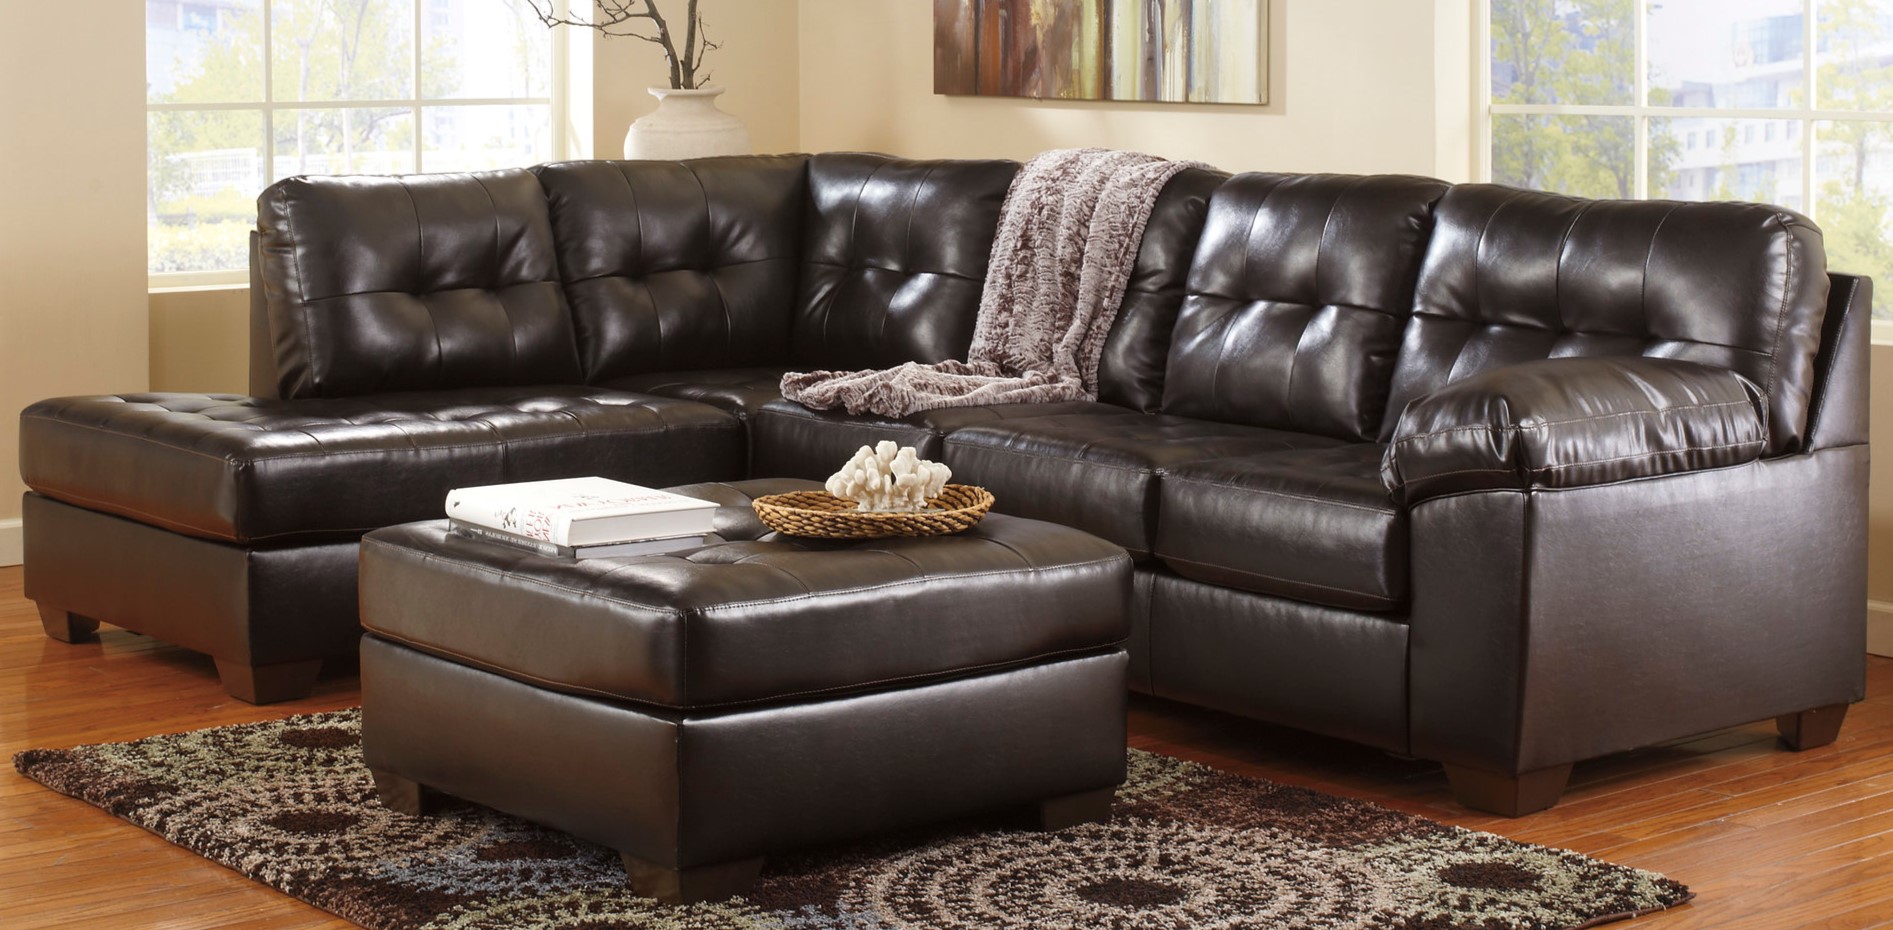 Кожаный темный диван можно использовать в классическом или в современном интерьере